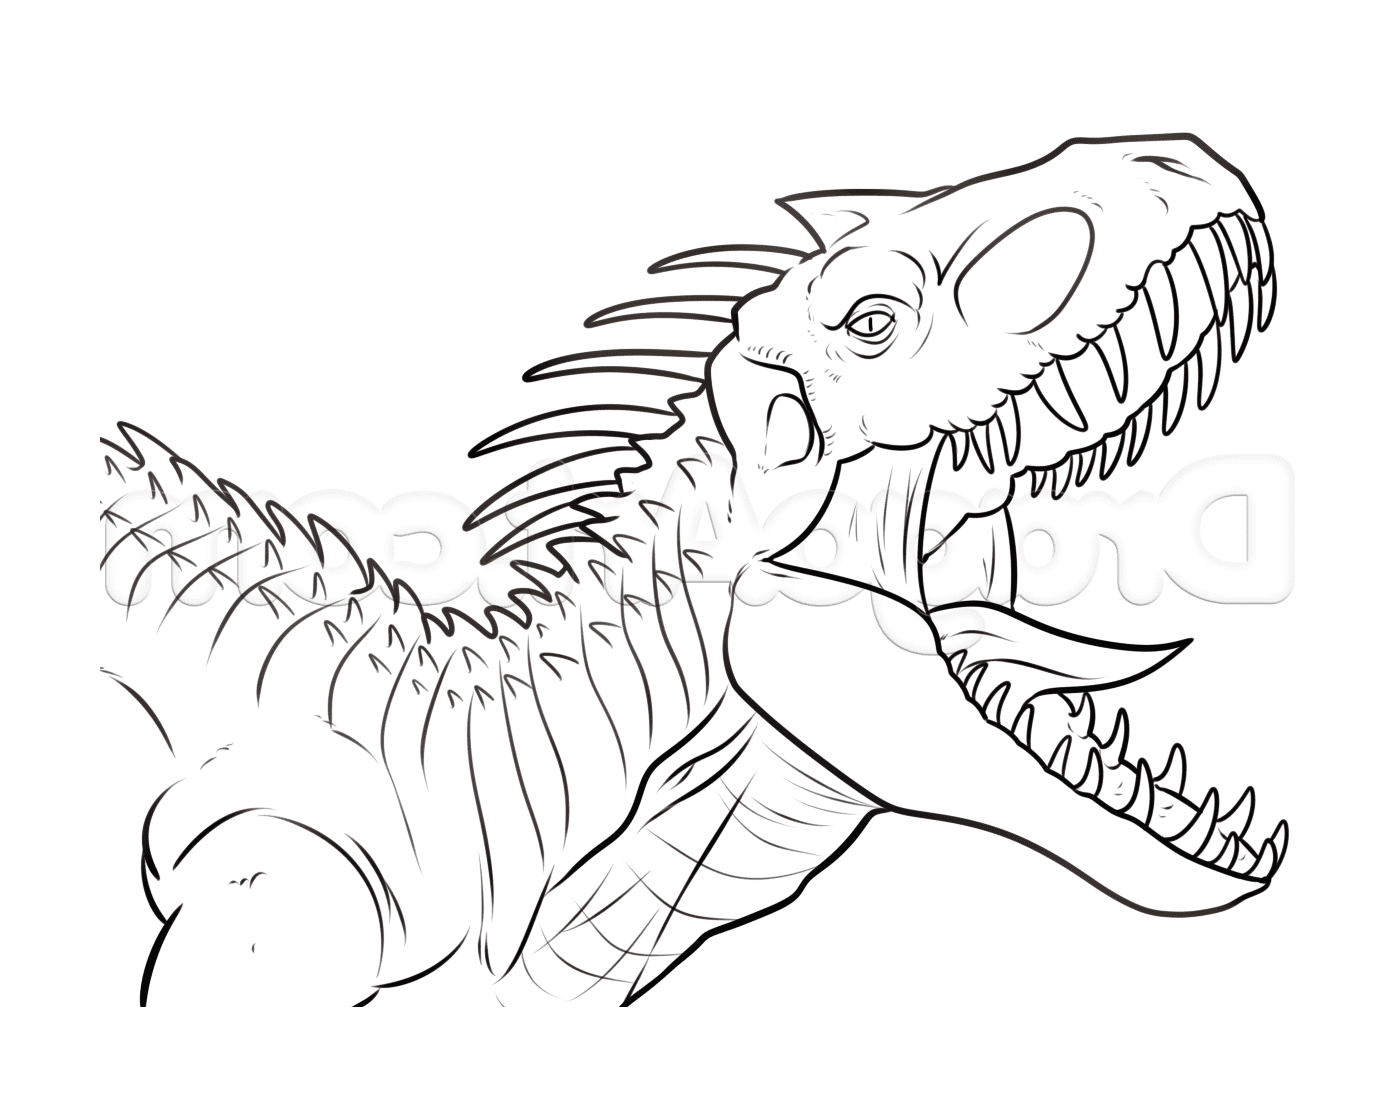  Indominus Rex, parque jurássico assustador 